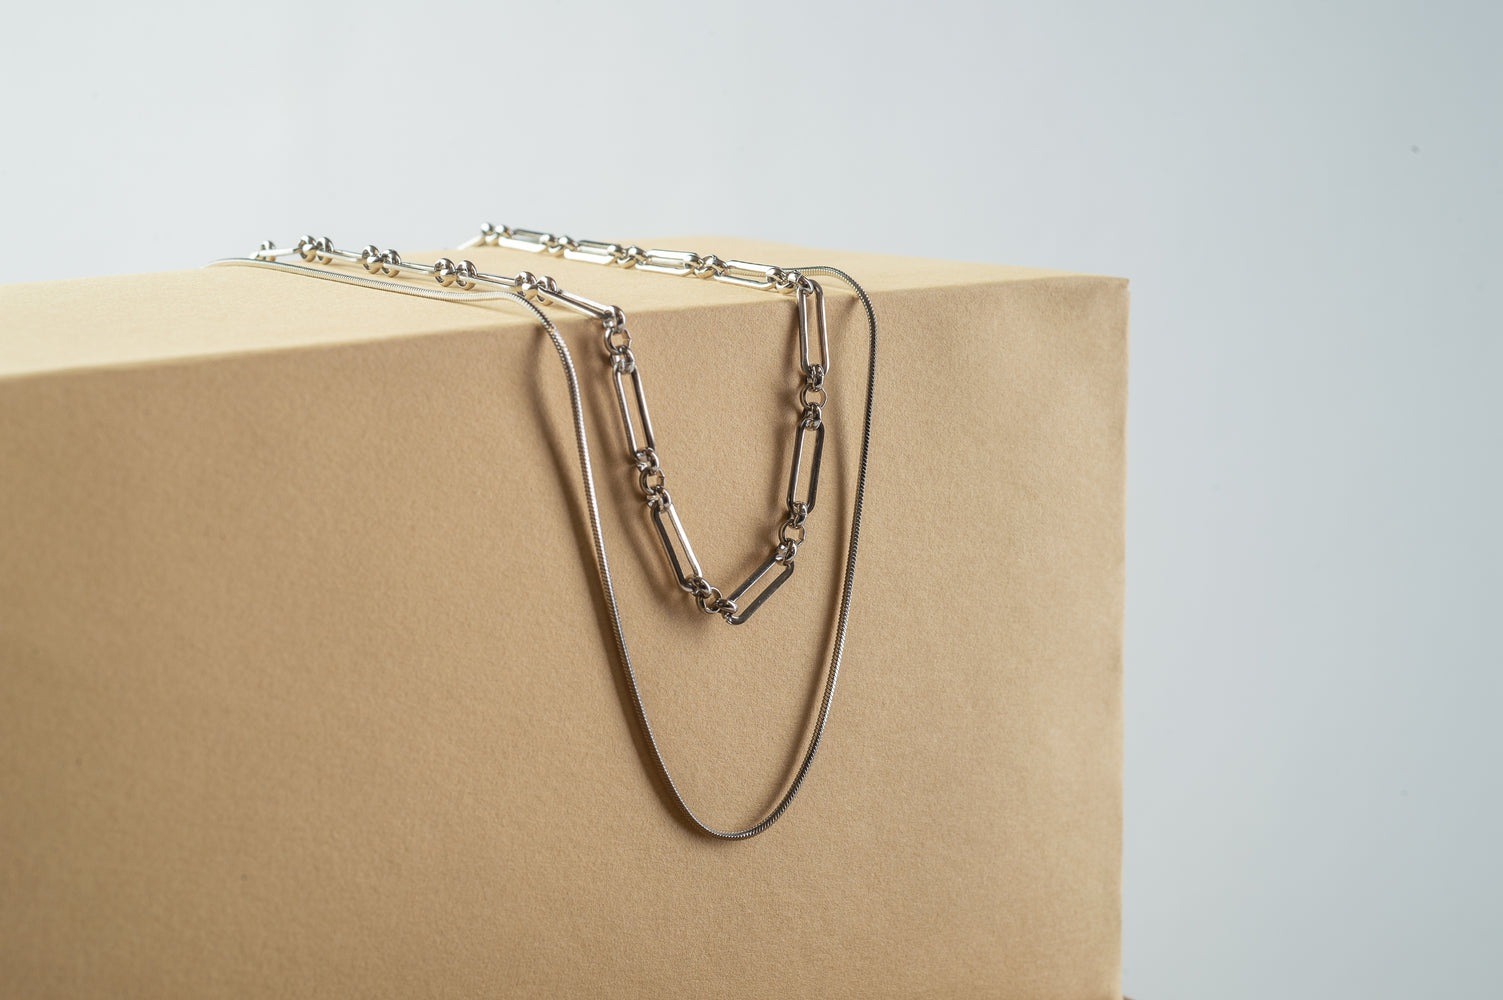 Cindertoella Fea necklace made of silver hoops